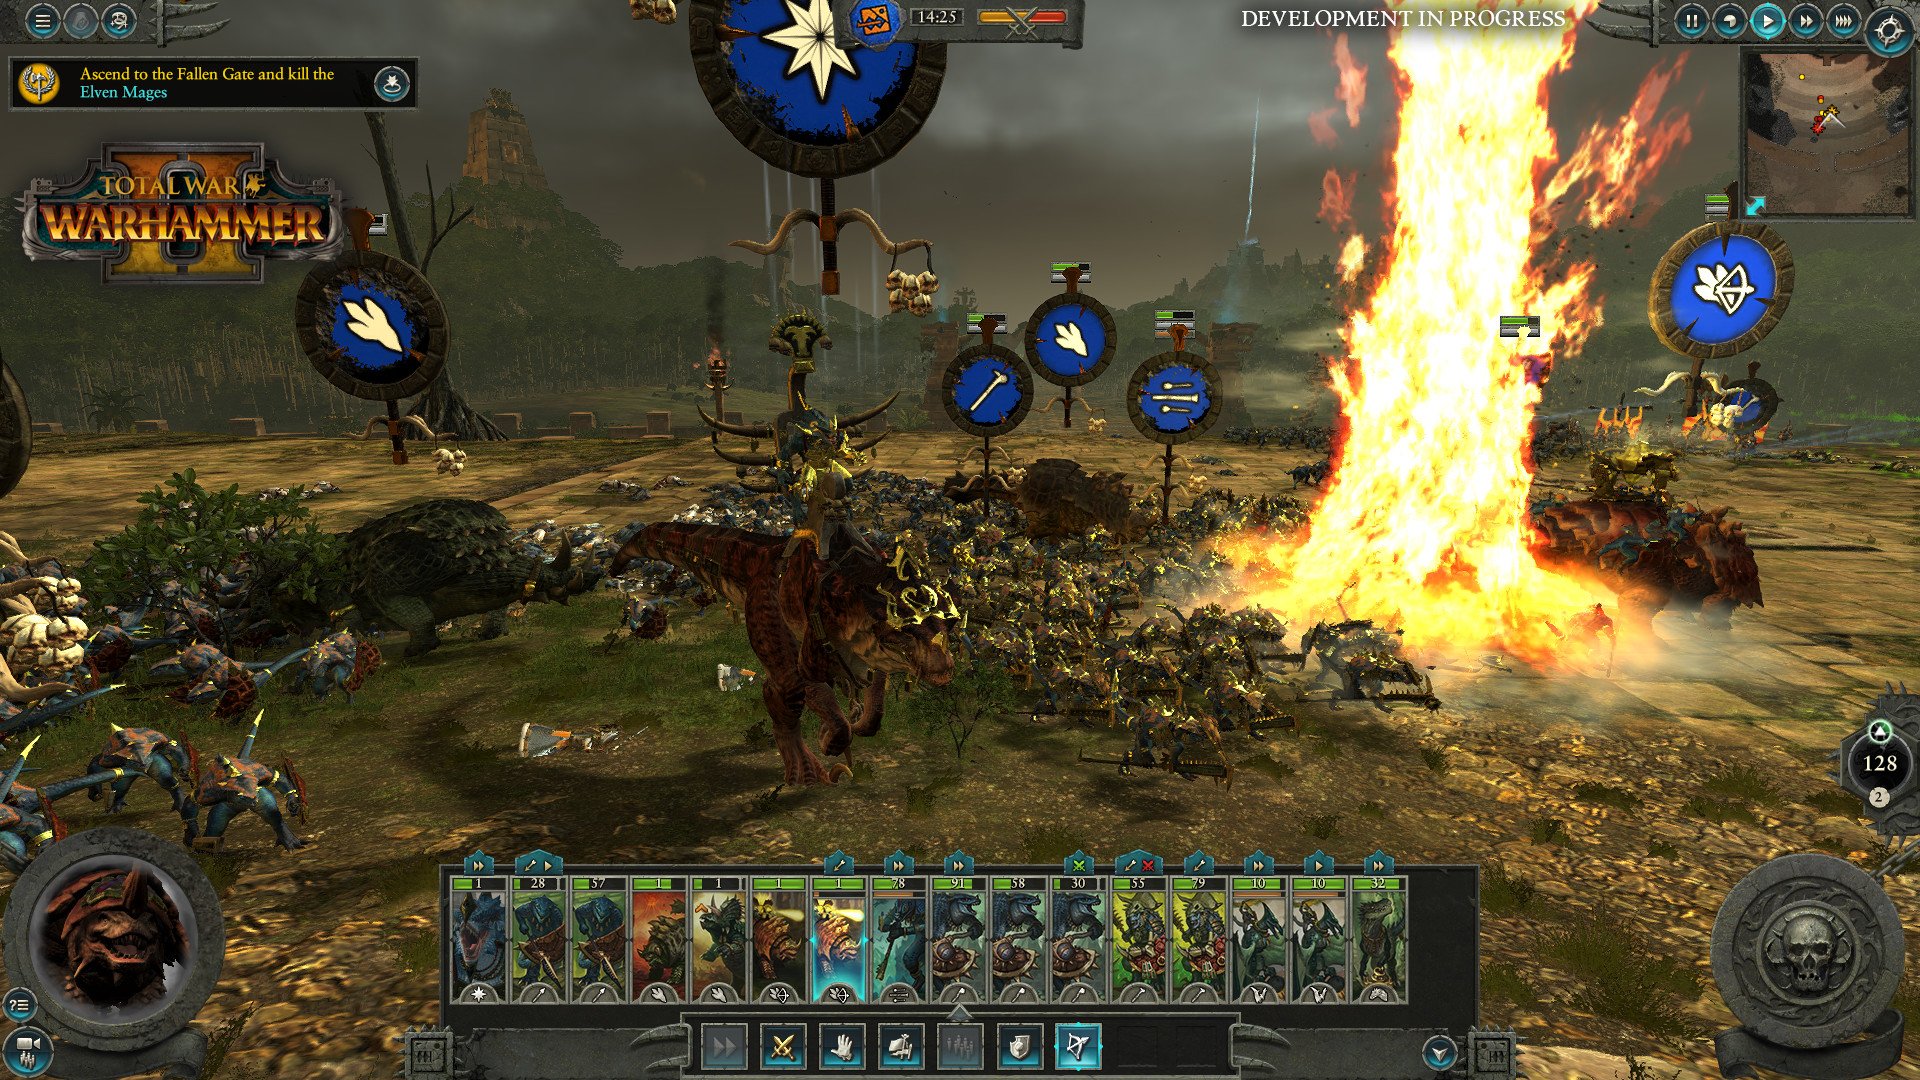 بازی Total War Warhammer II از بهترین بازی های استراتژیک کامپیوتر